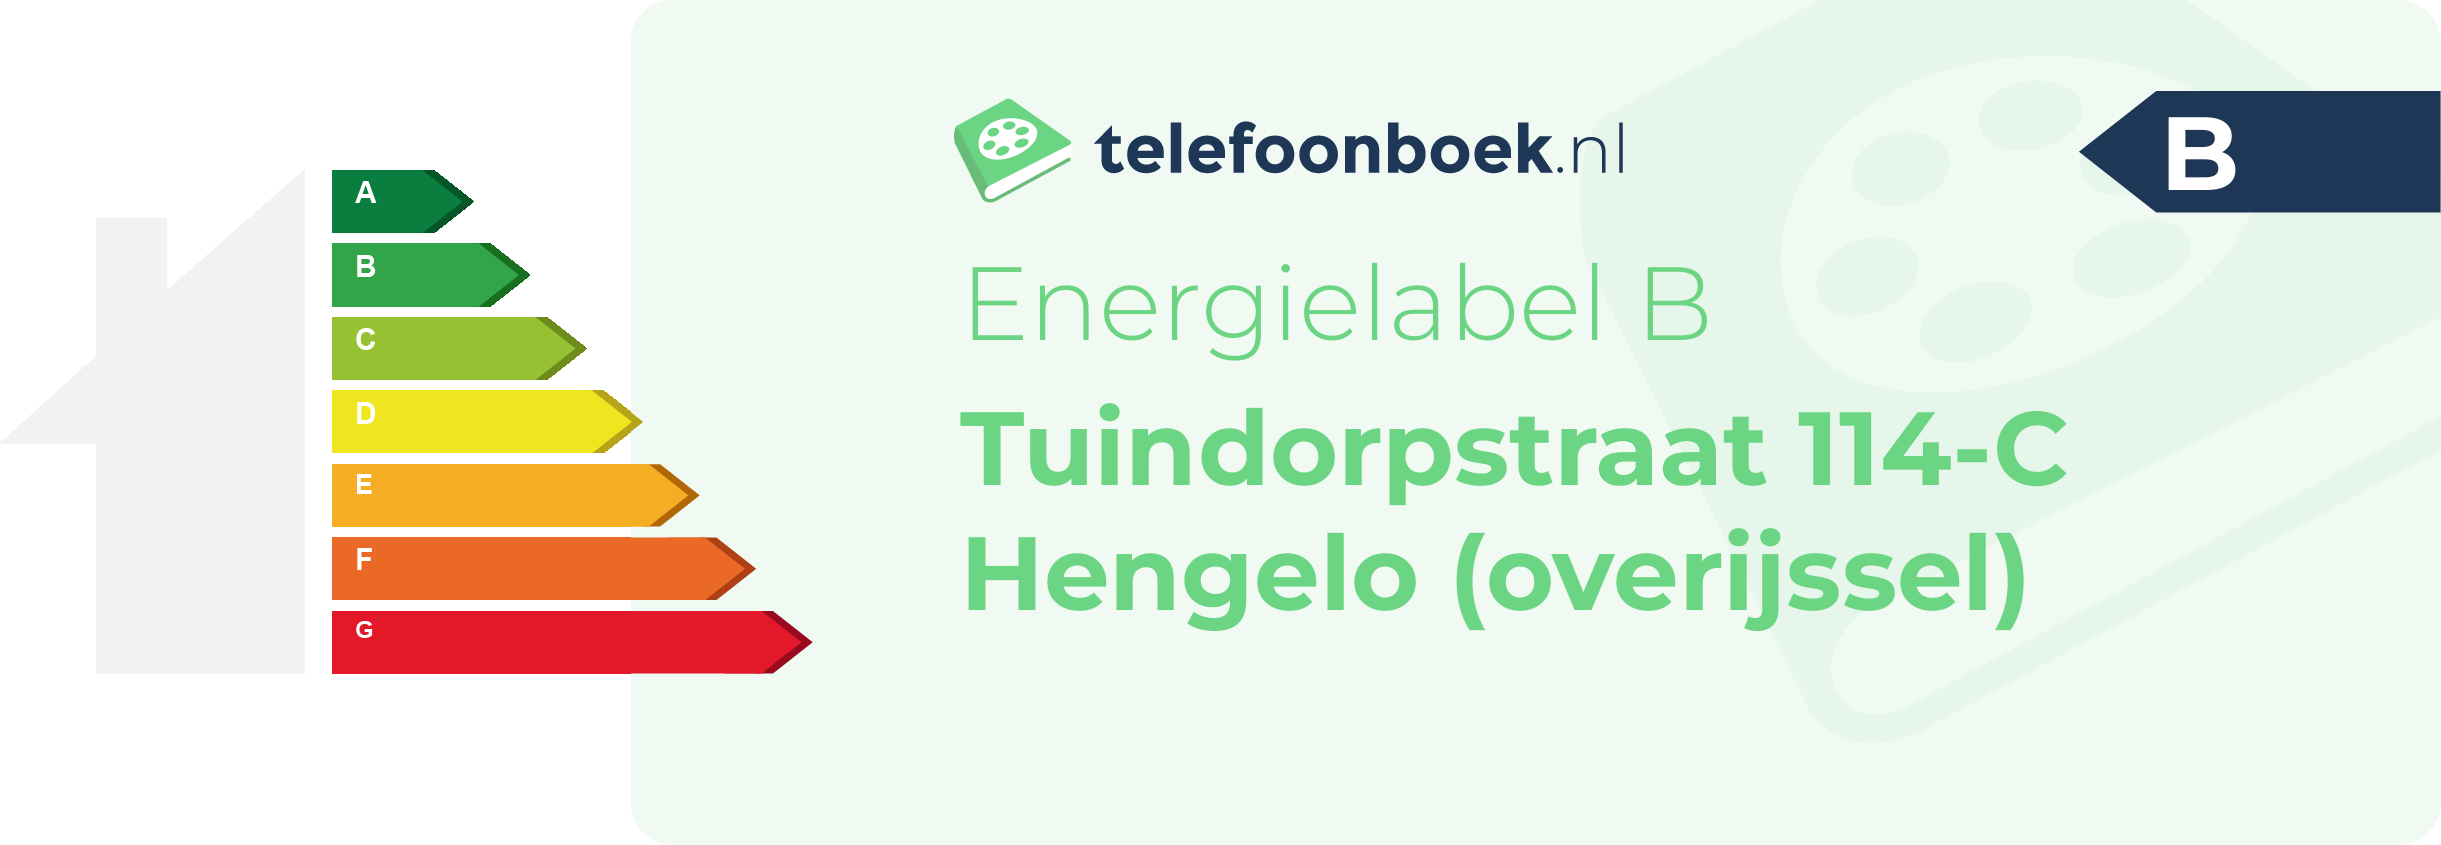 Energielabel Tuindorpstraat 114-C Hengelo (Overijssel)